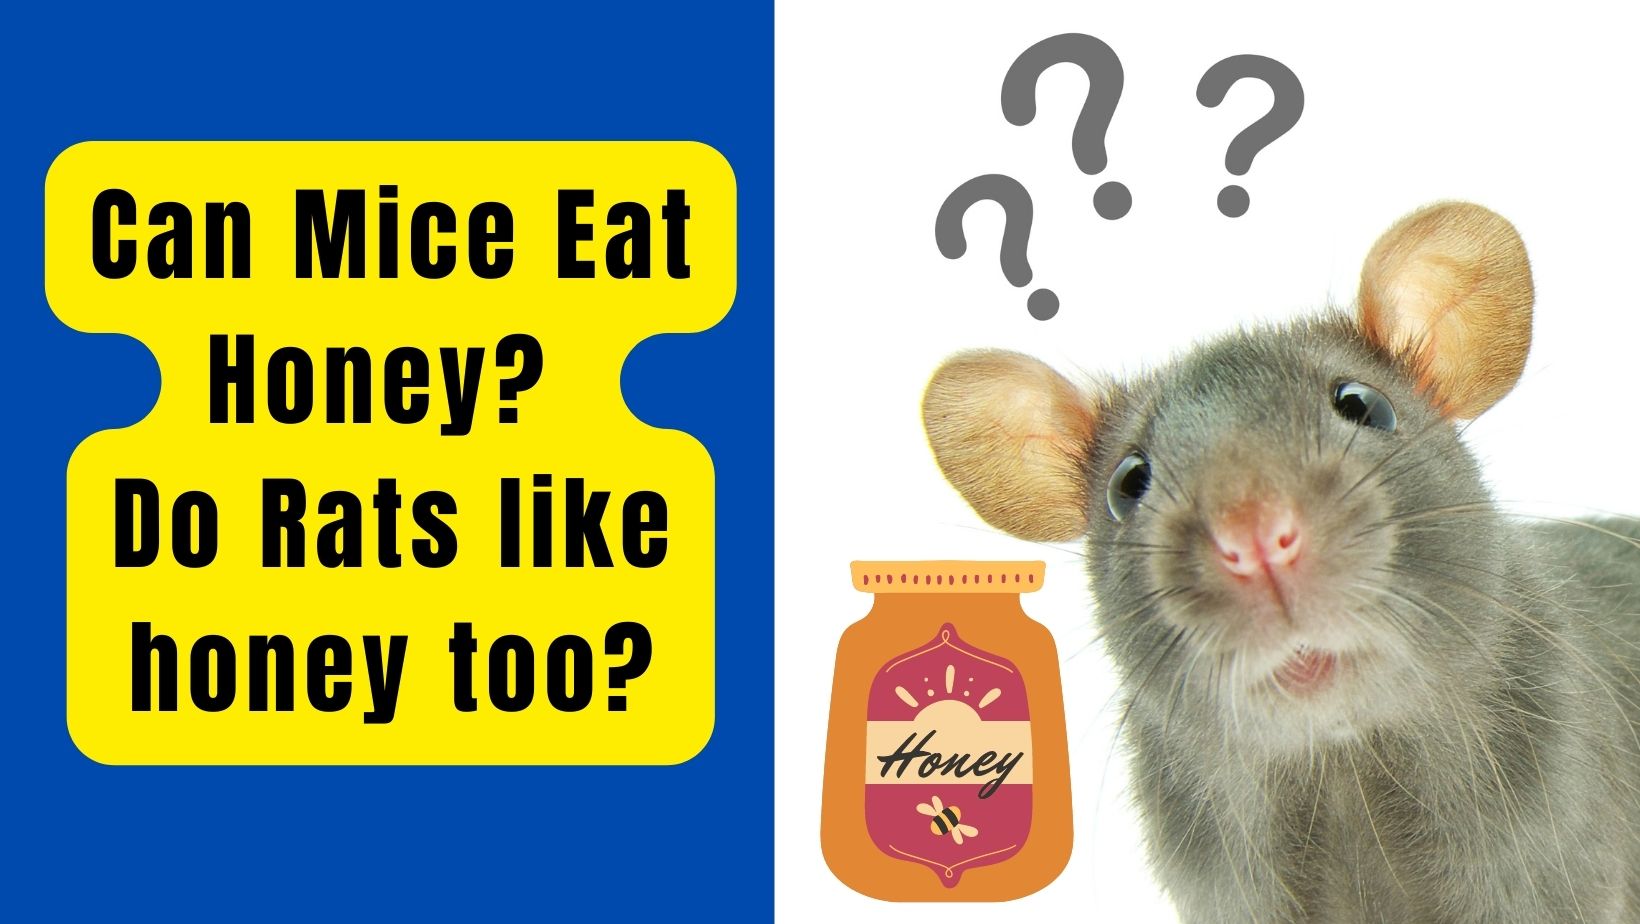 Can Mice Eat Honey? Do rats like honey too?